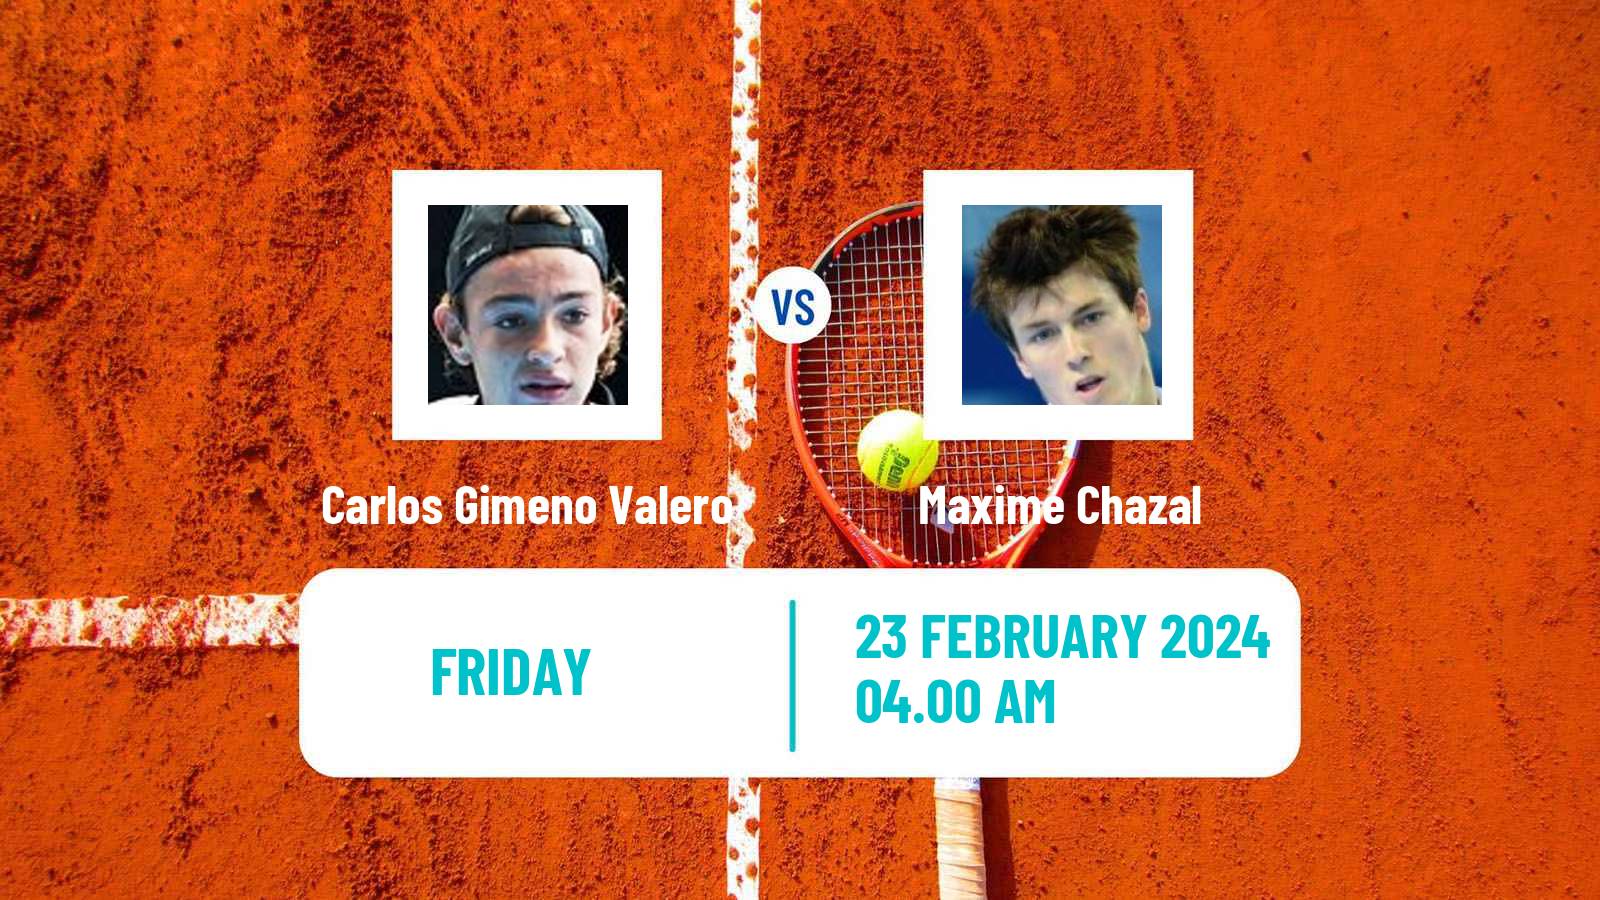 Tennis ITF M25 Antalya 4 Men Carlos Gimeno Valero - Maxime Chazal